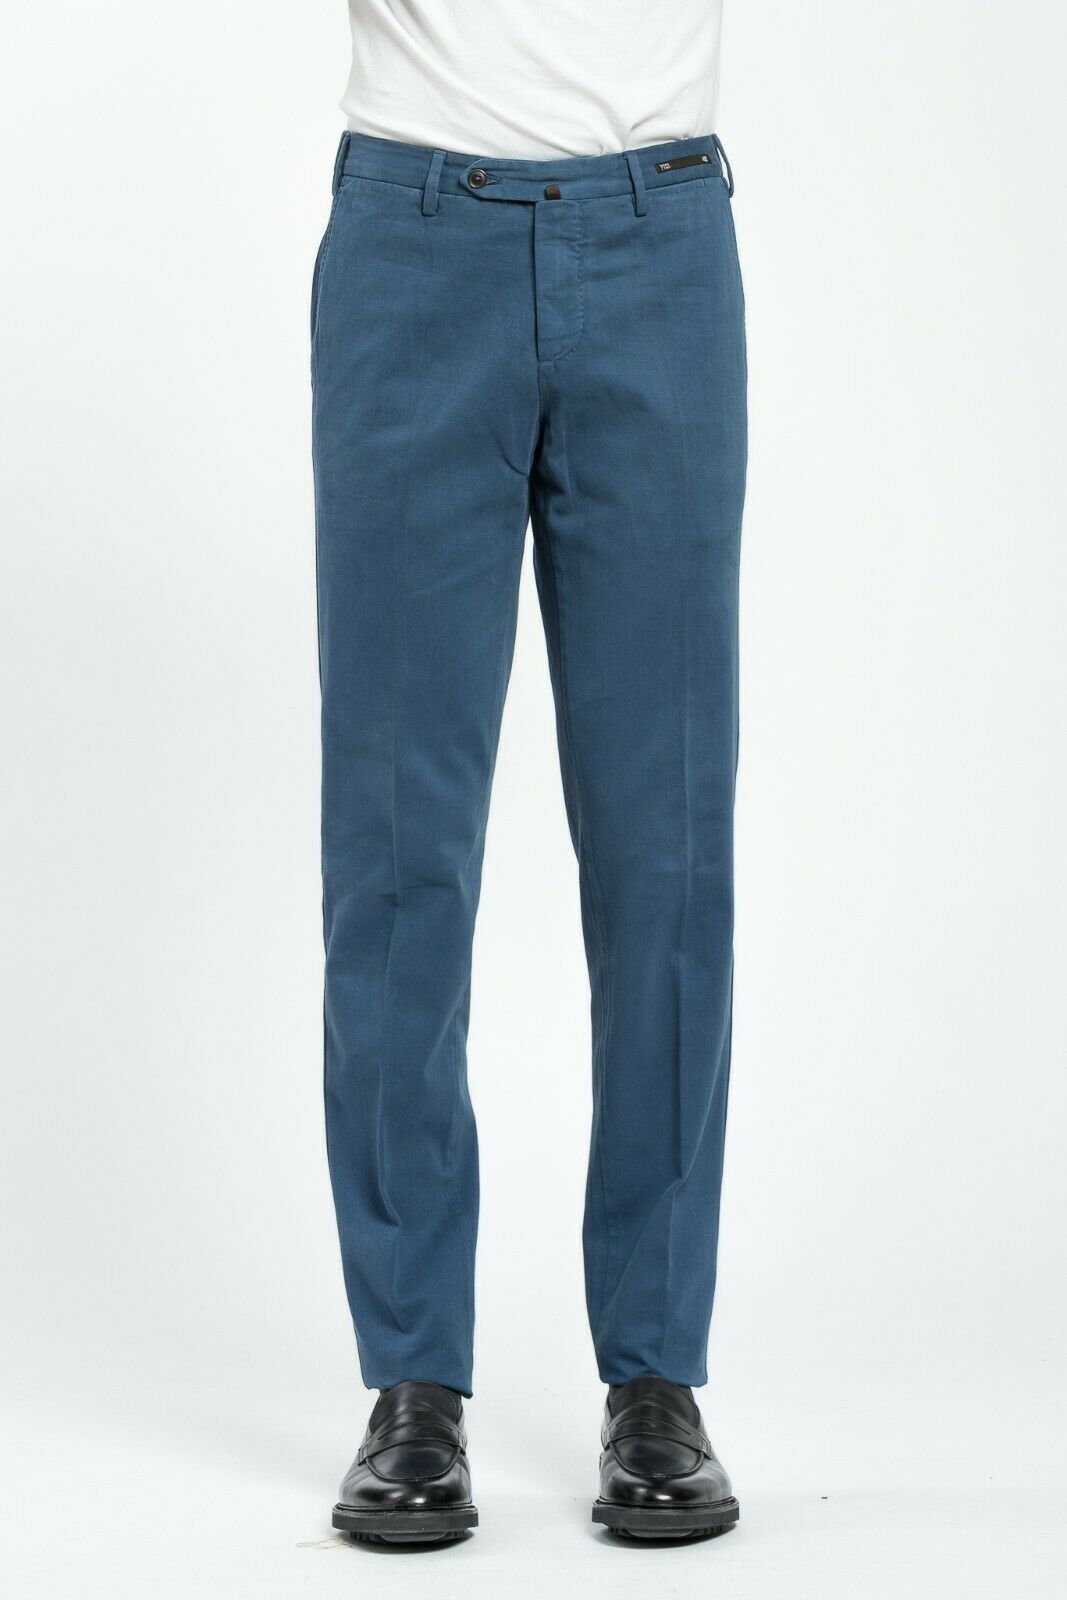 320$ PT01 BLENDED CASHMERE Cerulean Blue Trousers Pants Cotton Cashmere ...